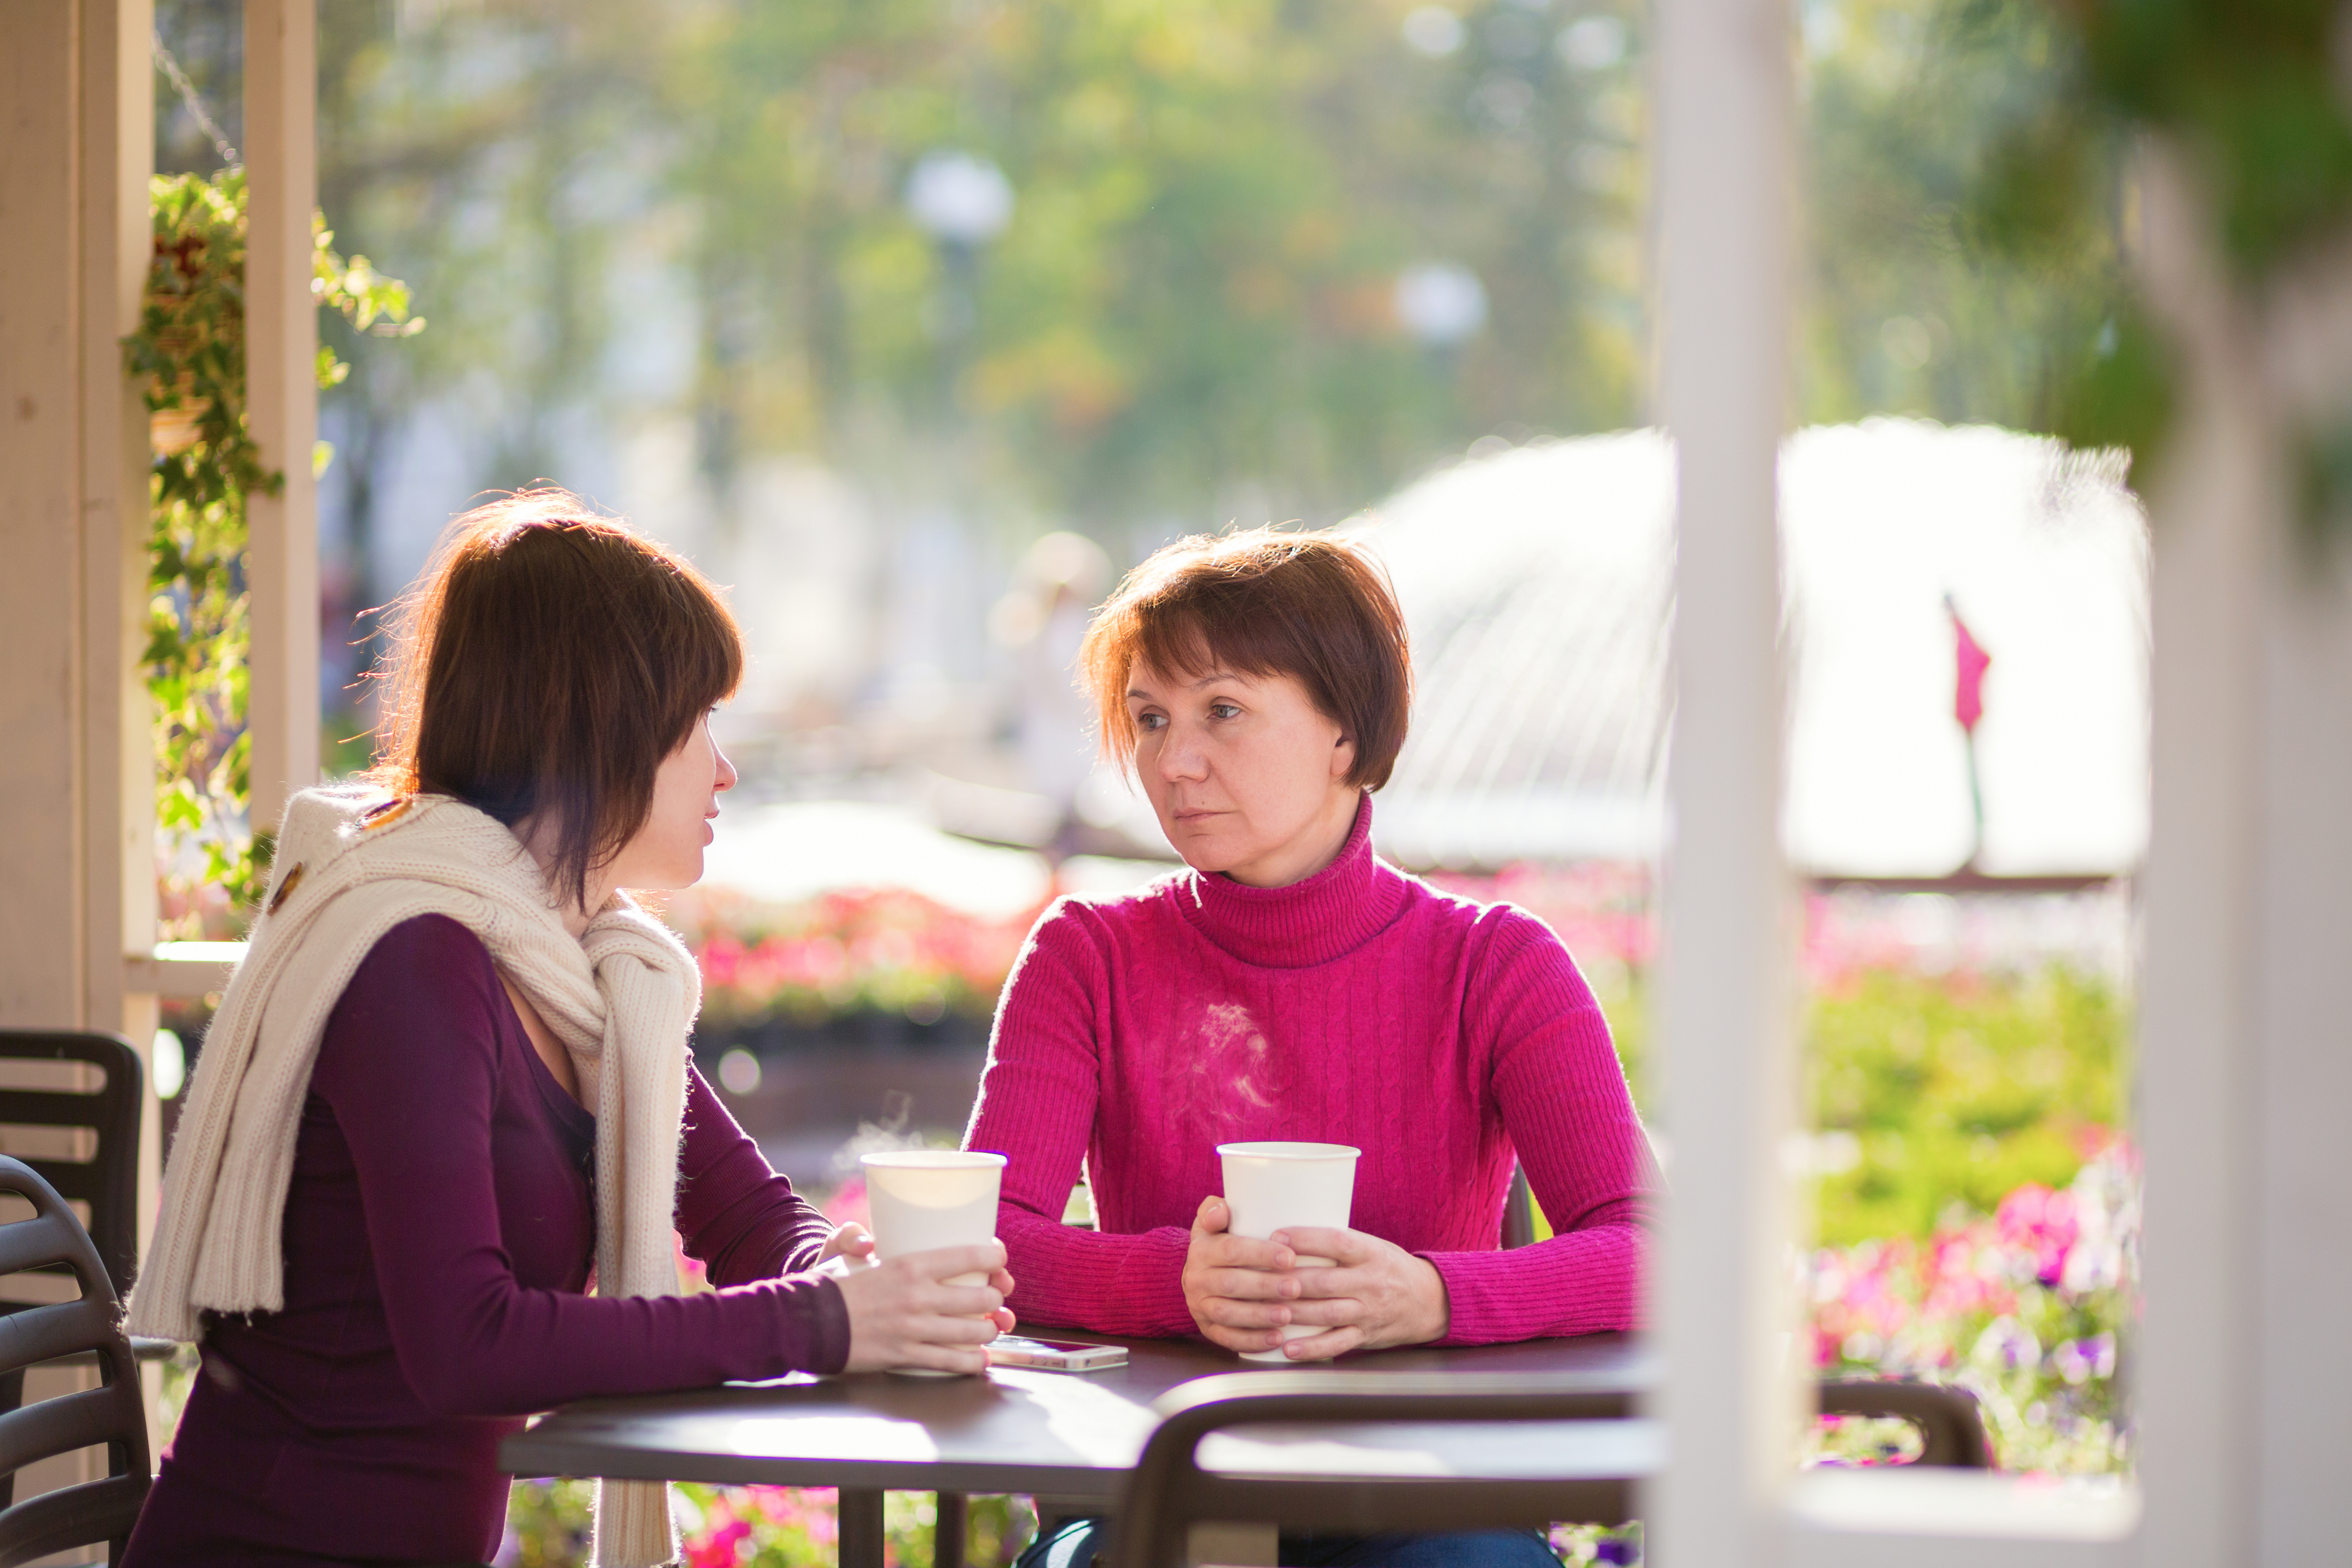 Eine junge Frau und eine ältere Frau sitzen in einem Cafe | Quelle: Shutterstock